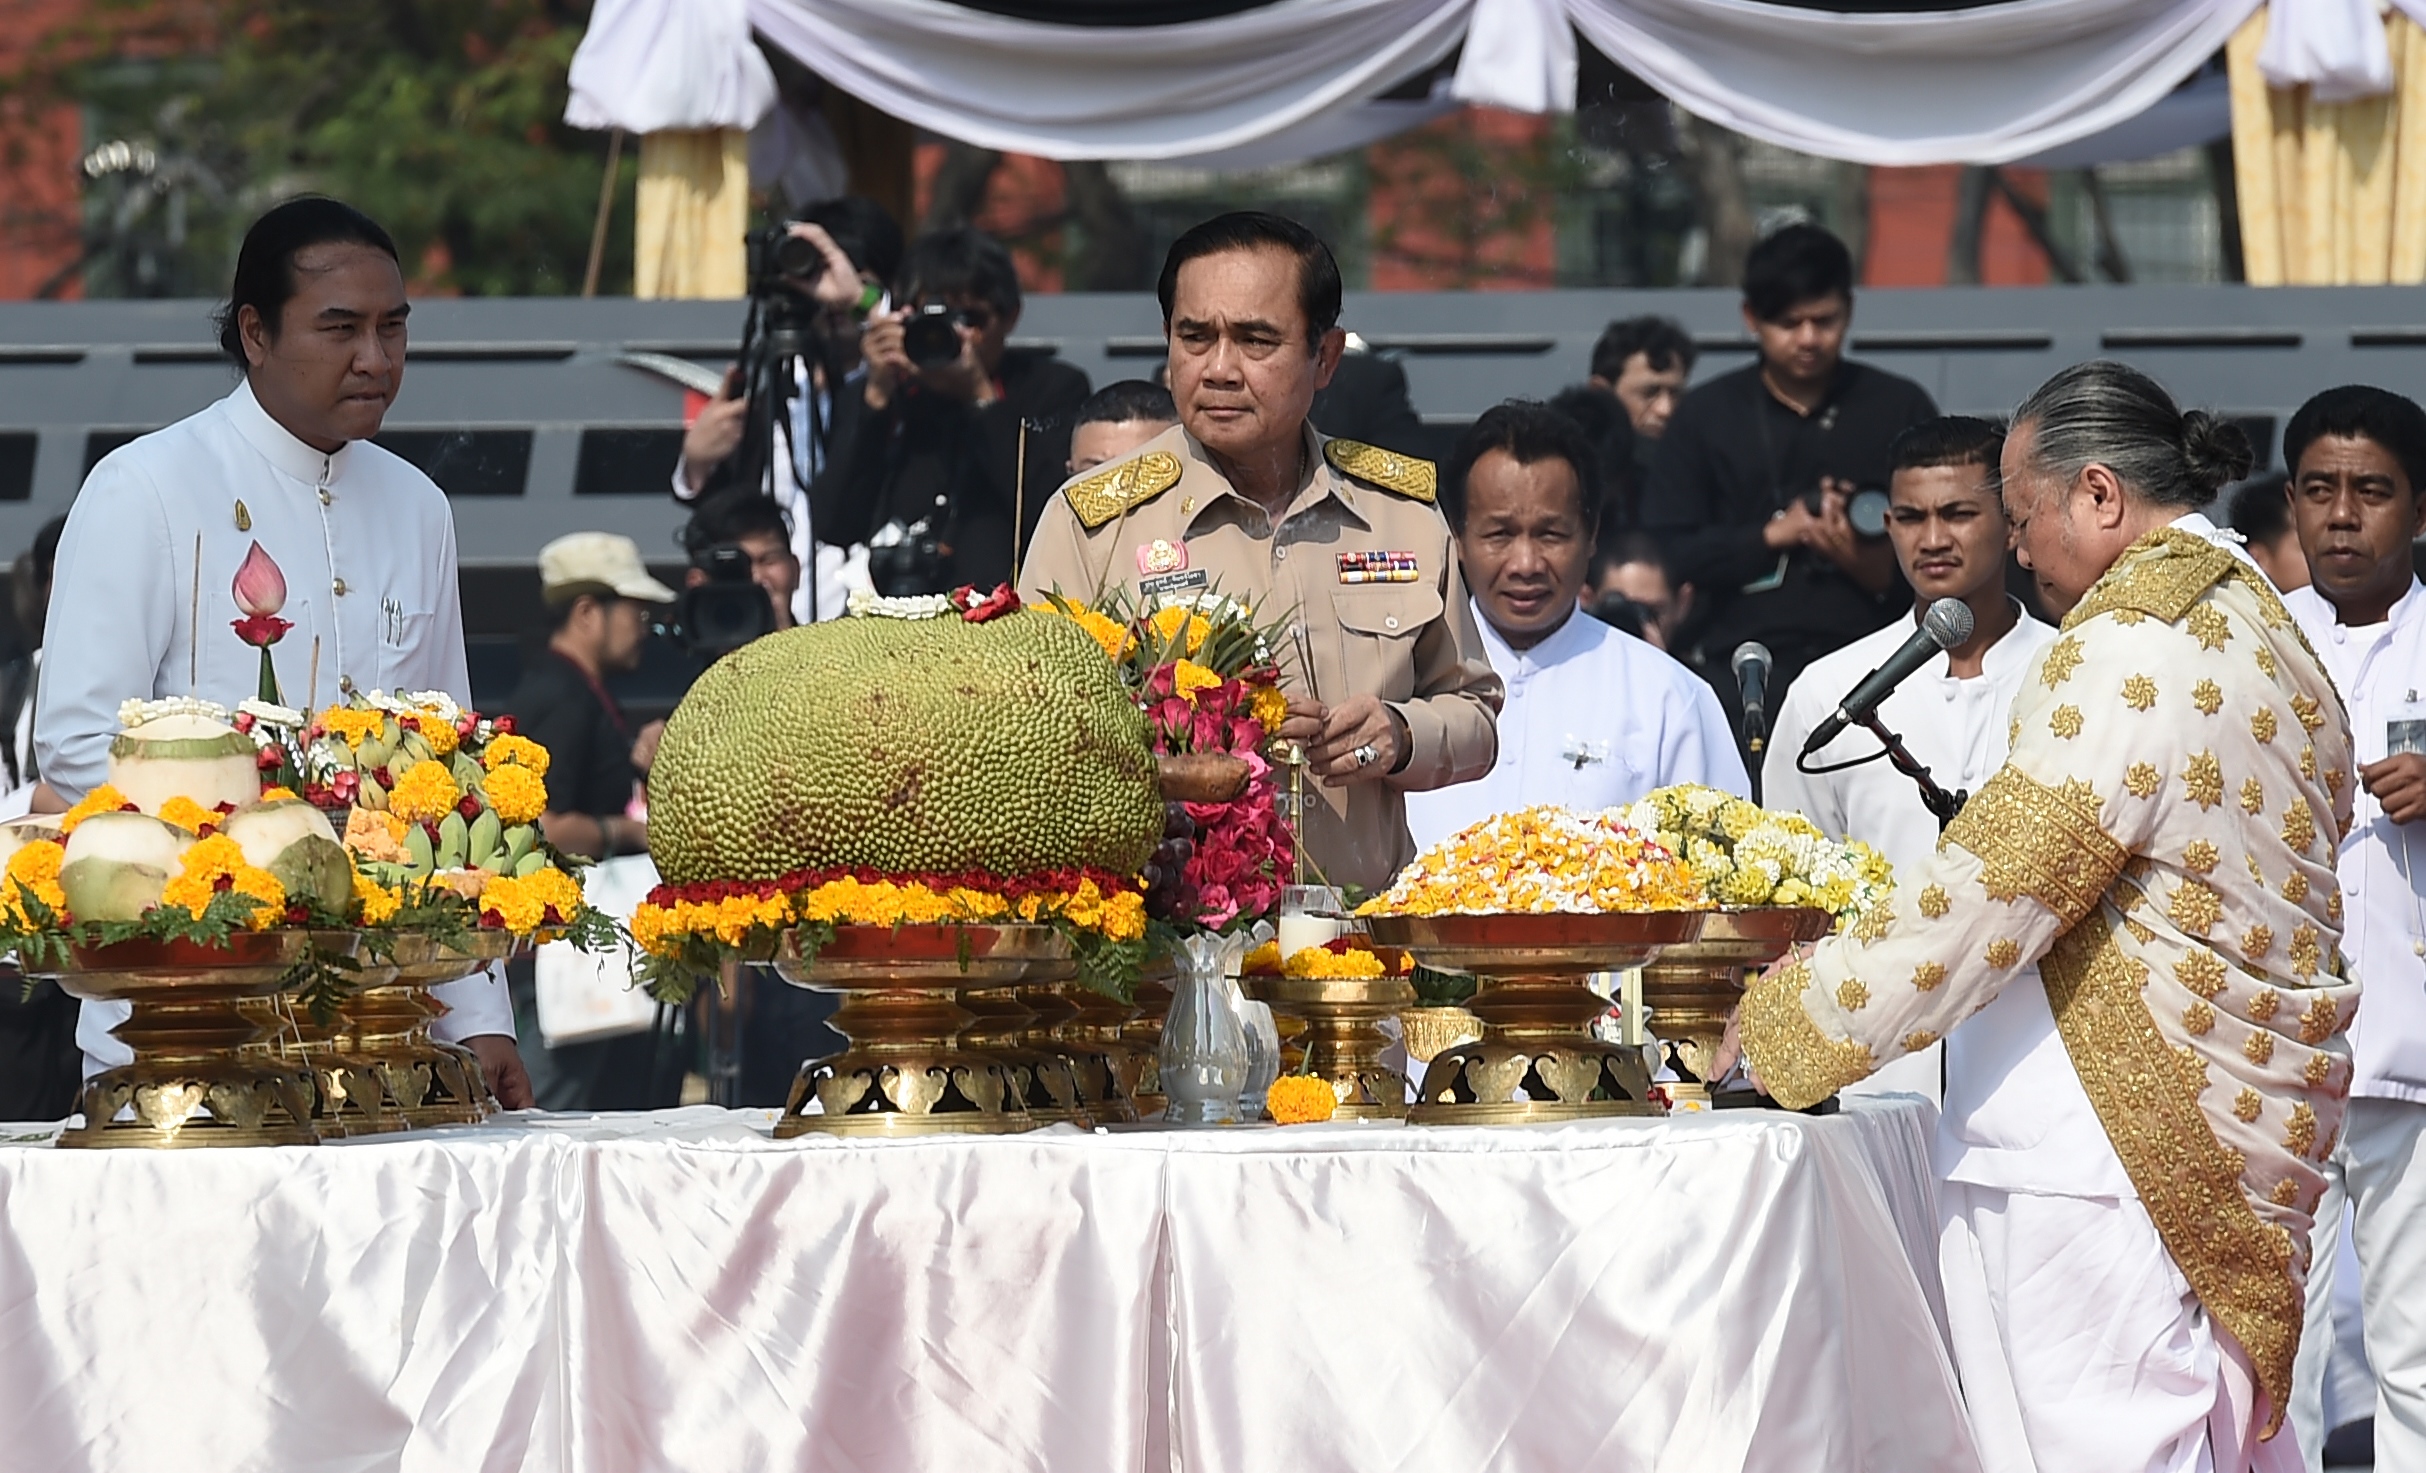 رئيس الوزراء التايلاندى برايوت تشان أوتشا يتفقد القرابين المعدة لمحرقة جنازة ملك تايلاند السابق